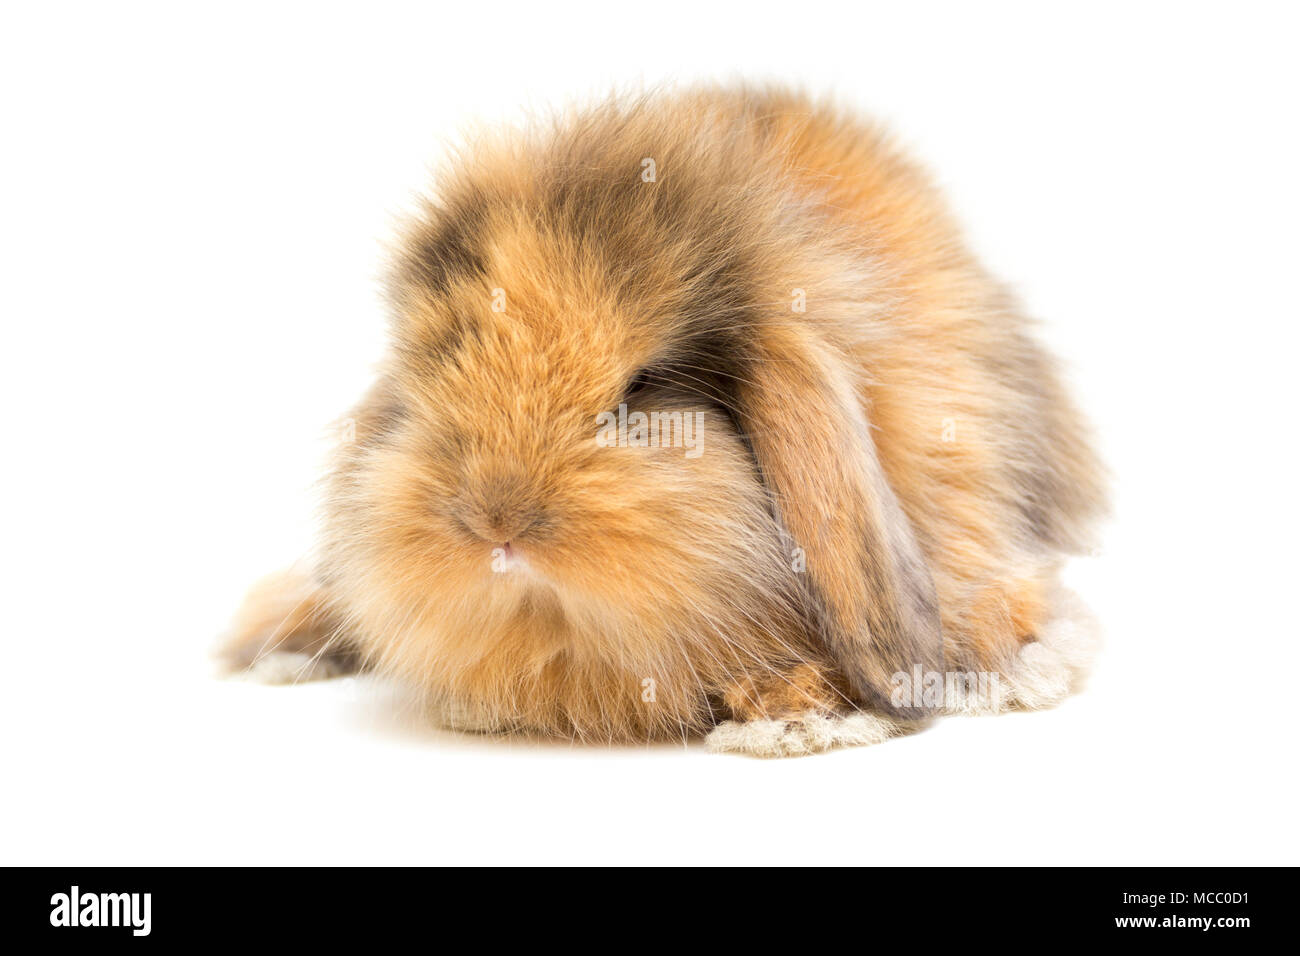 Piccolo lop-eared coniglio isolato su sfondo bianco. Foto Stock